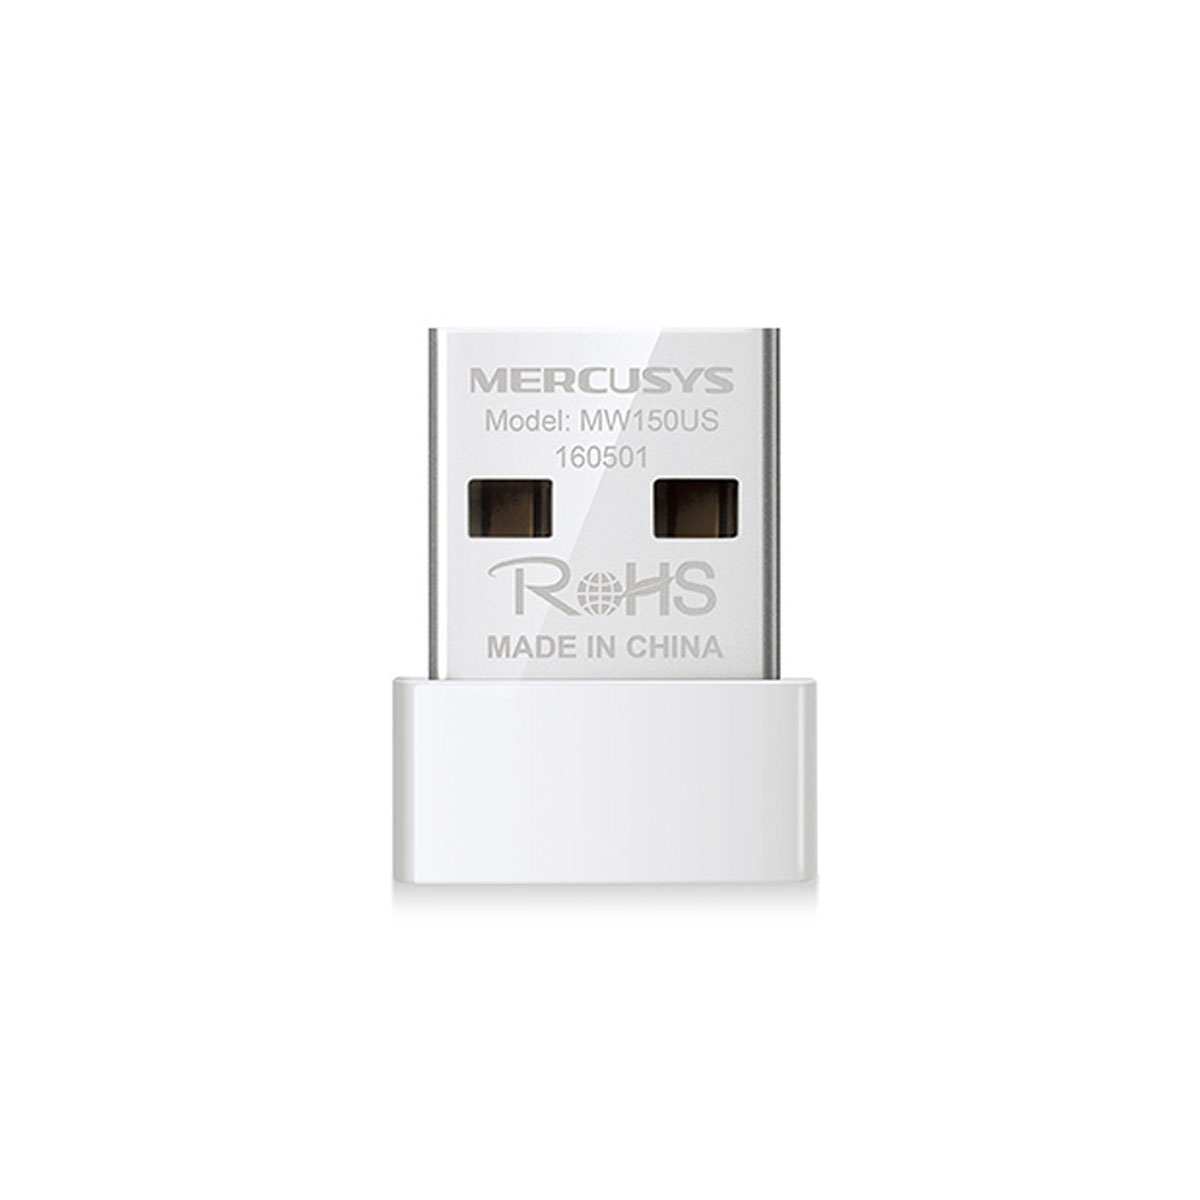 Беспроводной адаптер USB Wi-Fi MERCUSYS MW150US стандарта N, 802.11b/g/n, USB 2.0, 150 Mb/s, цвет белый